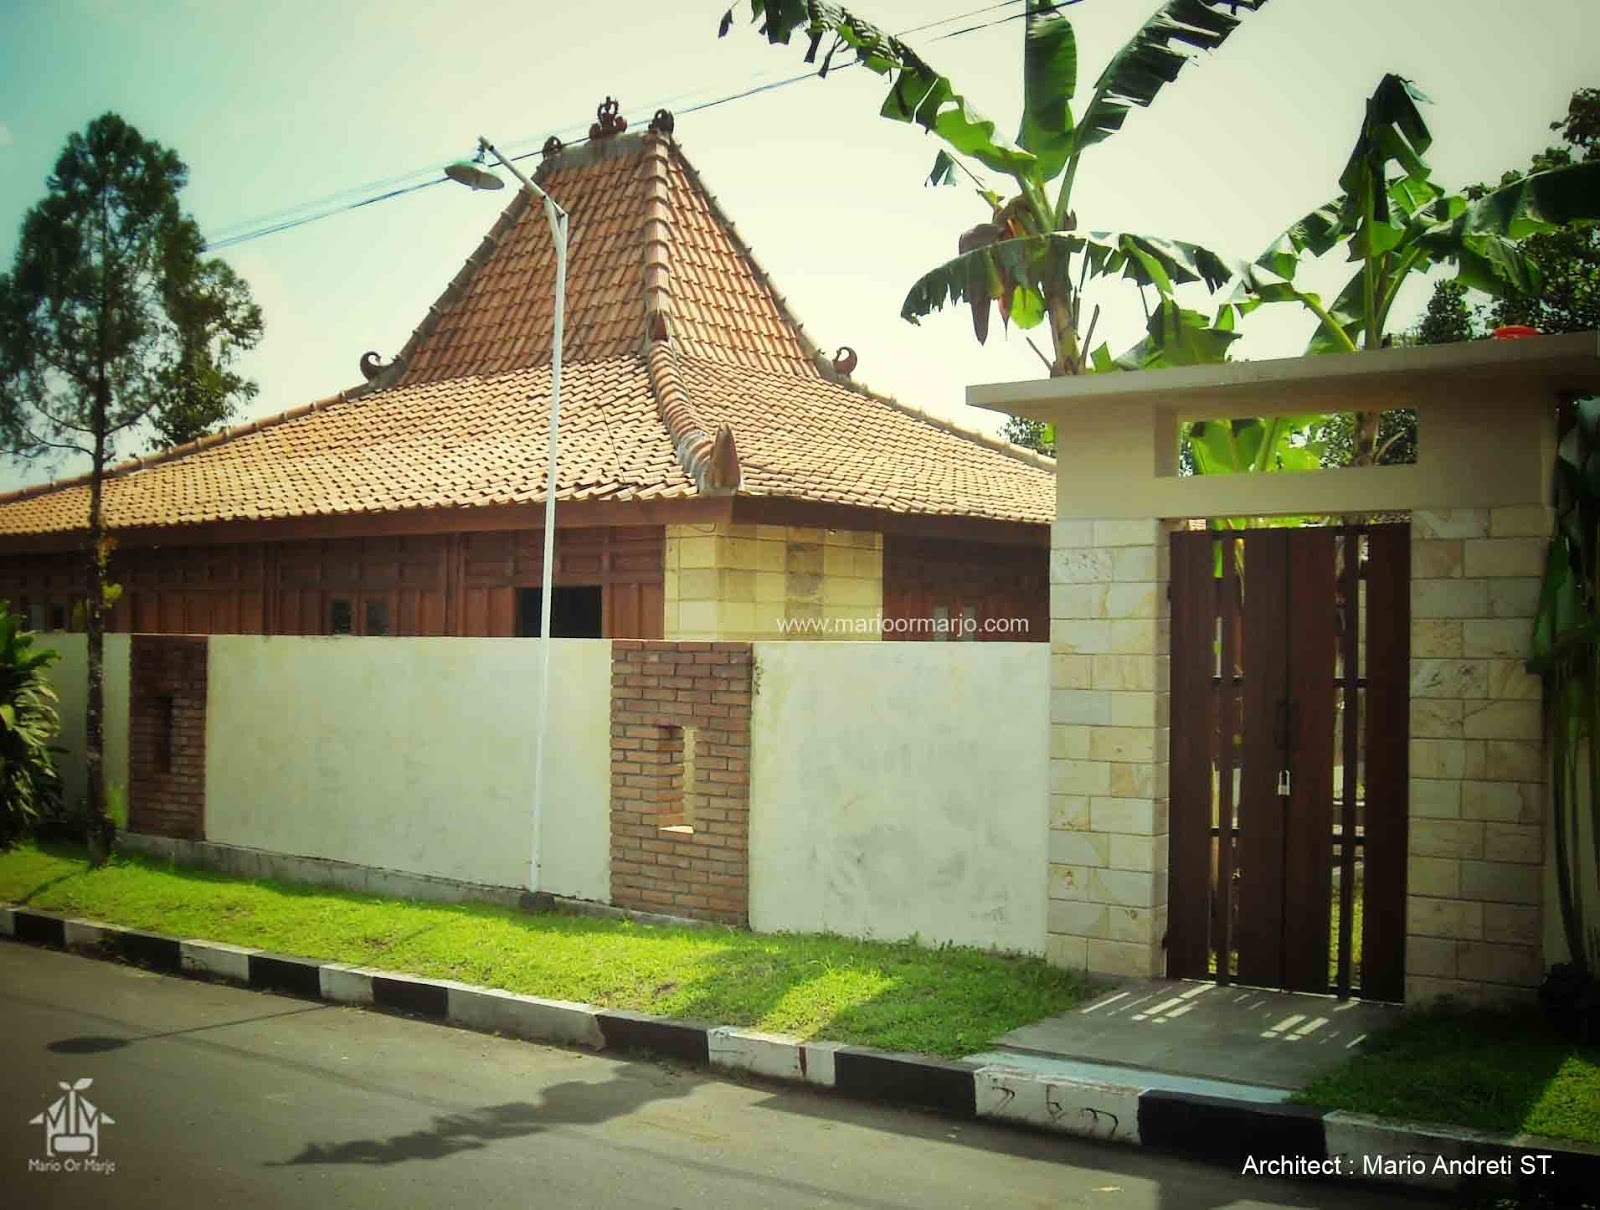  Rumah  Joglo  ibu Dr Nunuk Maria Ulfah Yogyakarta Indonesia